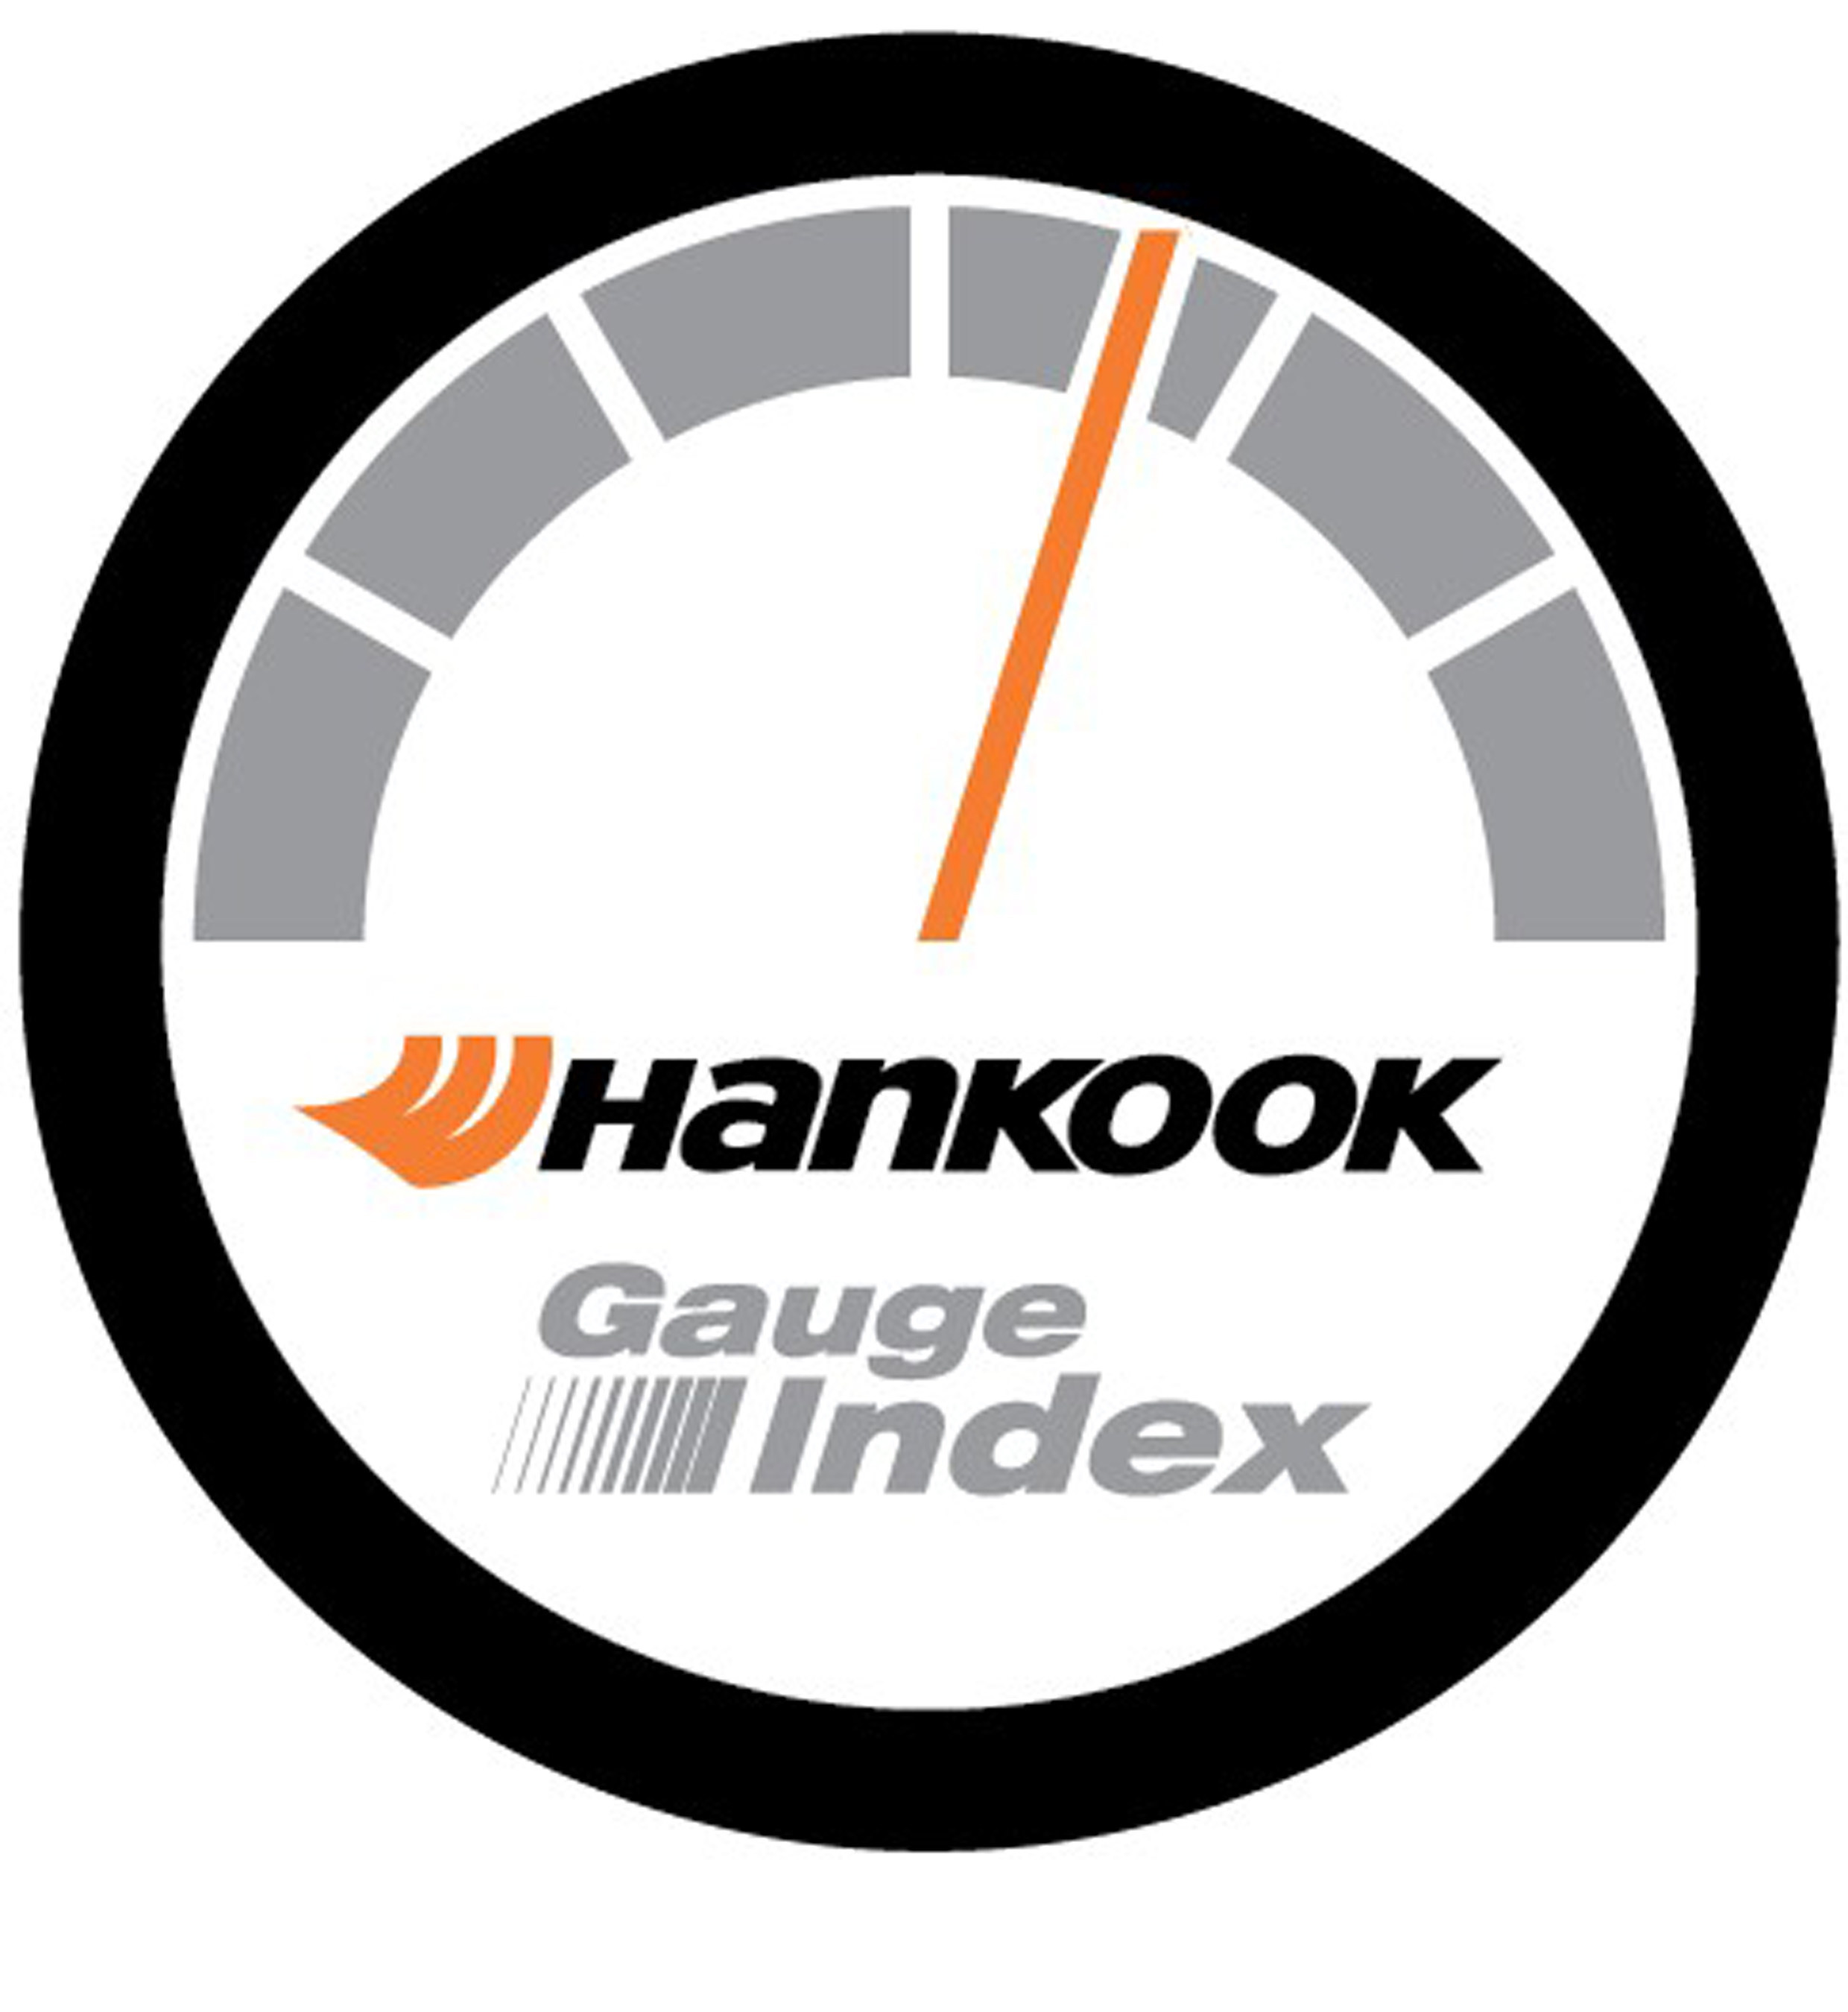 Hankook Gauge Index